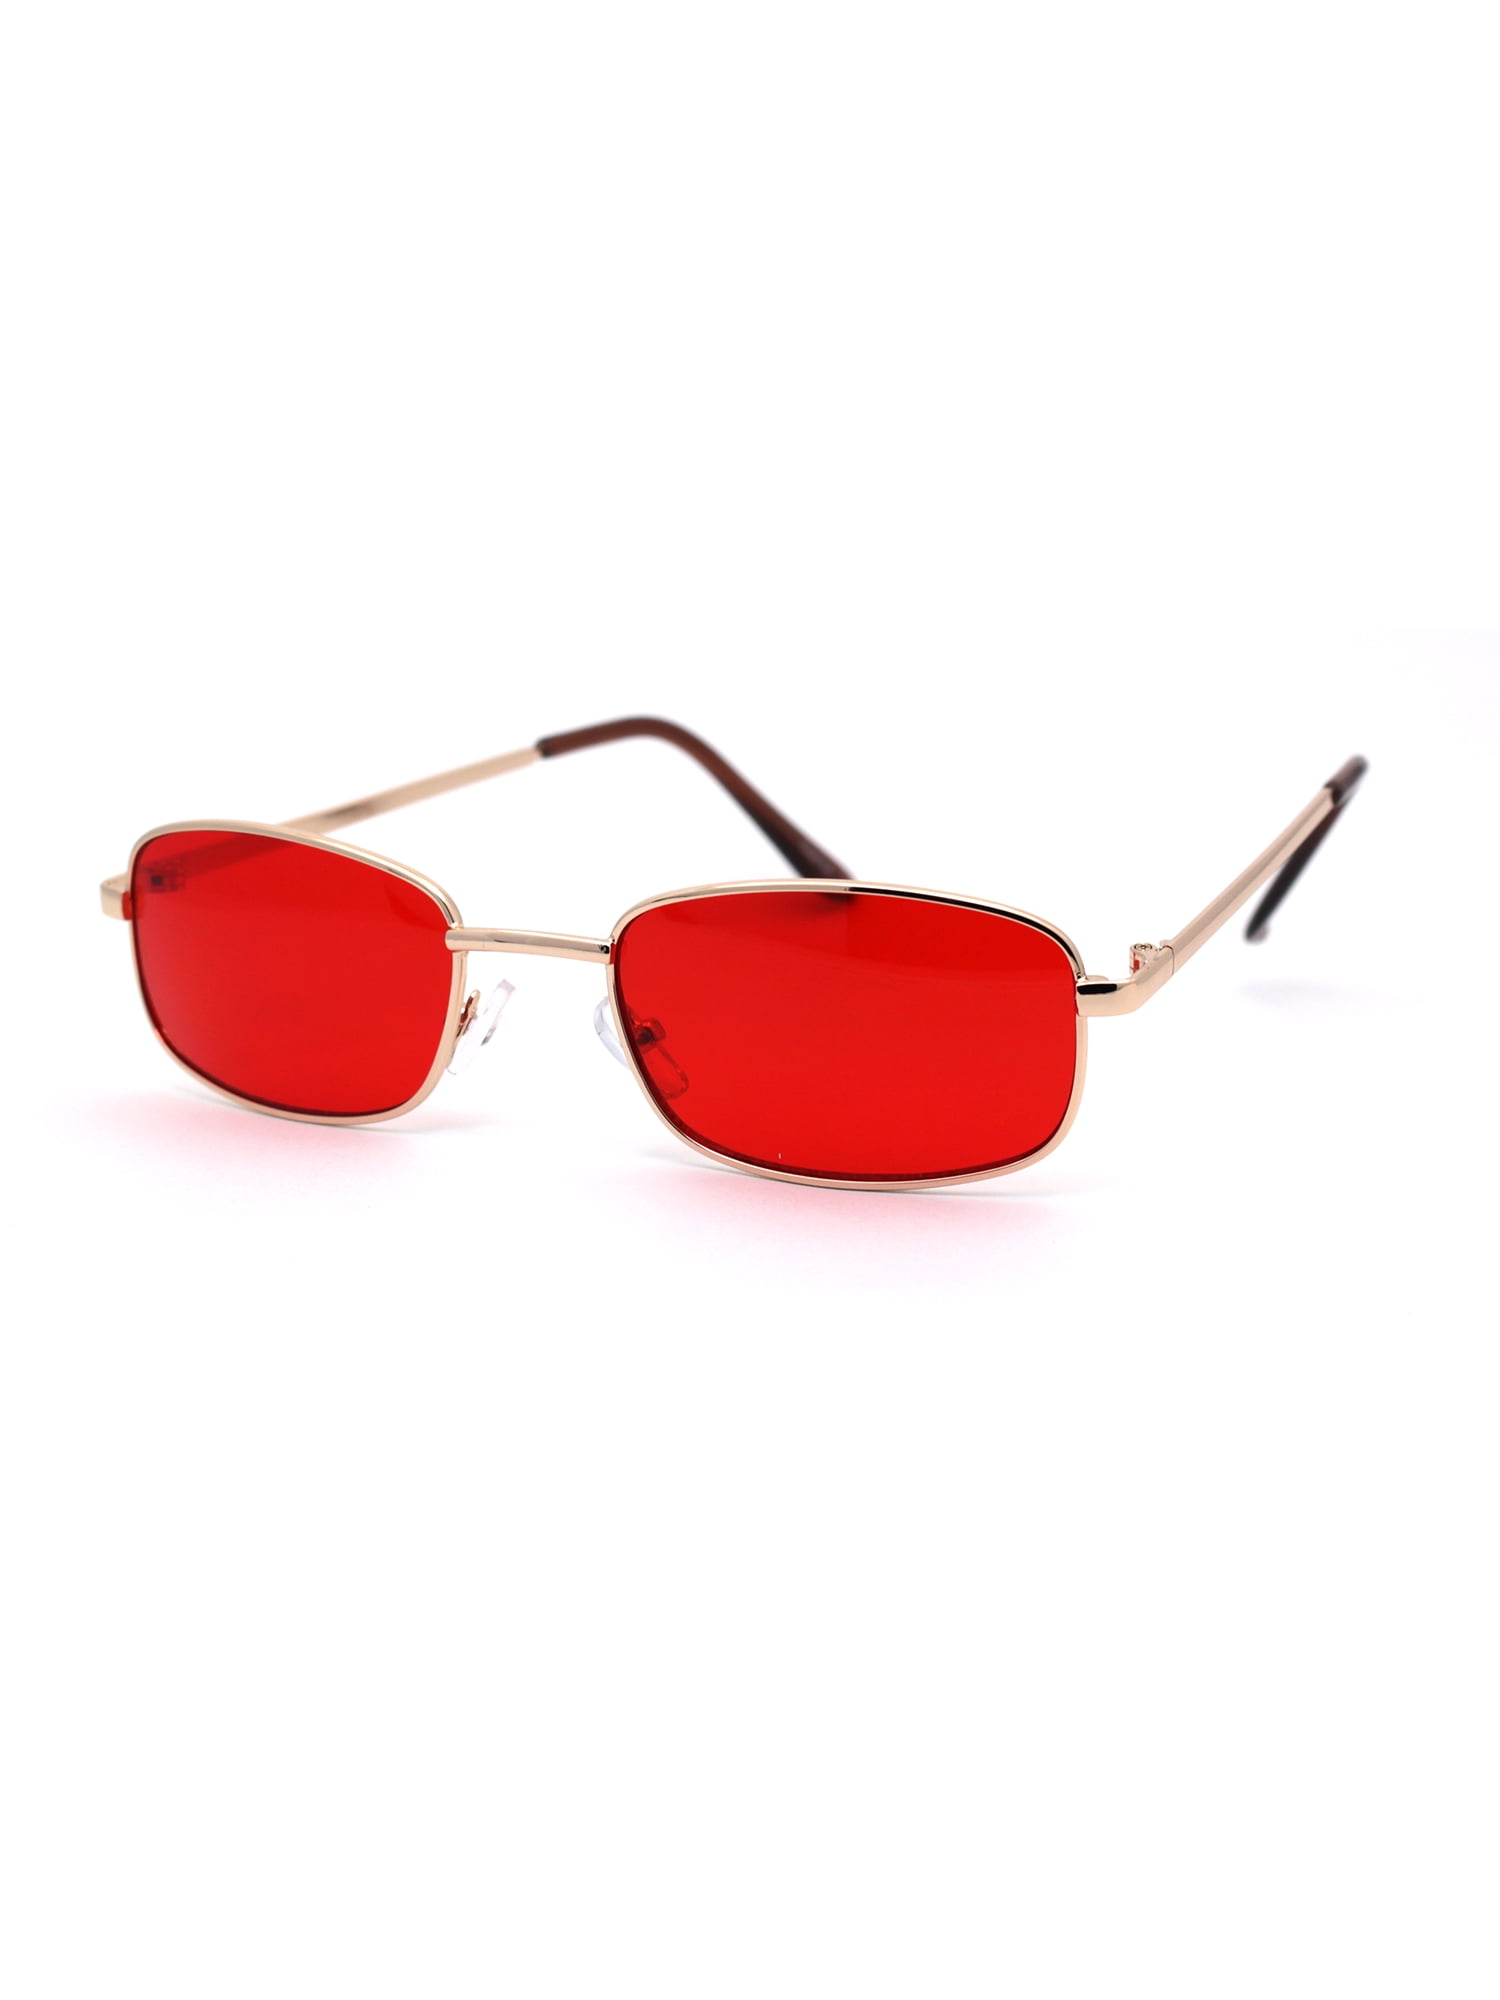 Sa106 Mens Narrow Rectangular Pop Color Lens Metal Rim Classic Sunglasses Gold Red Walmart